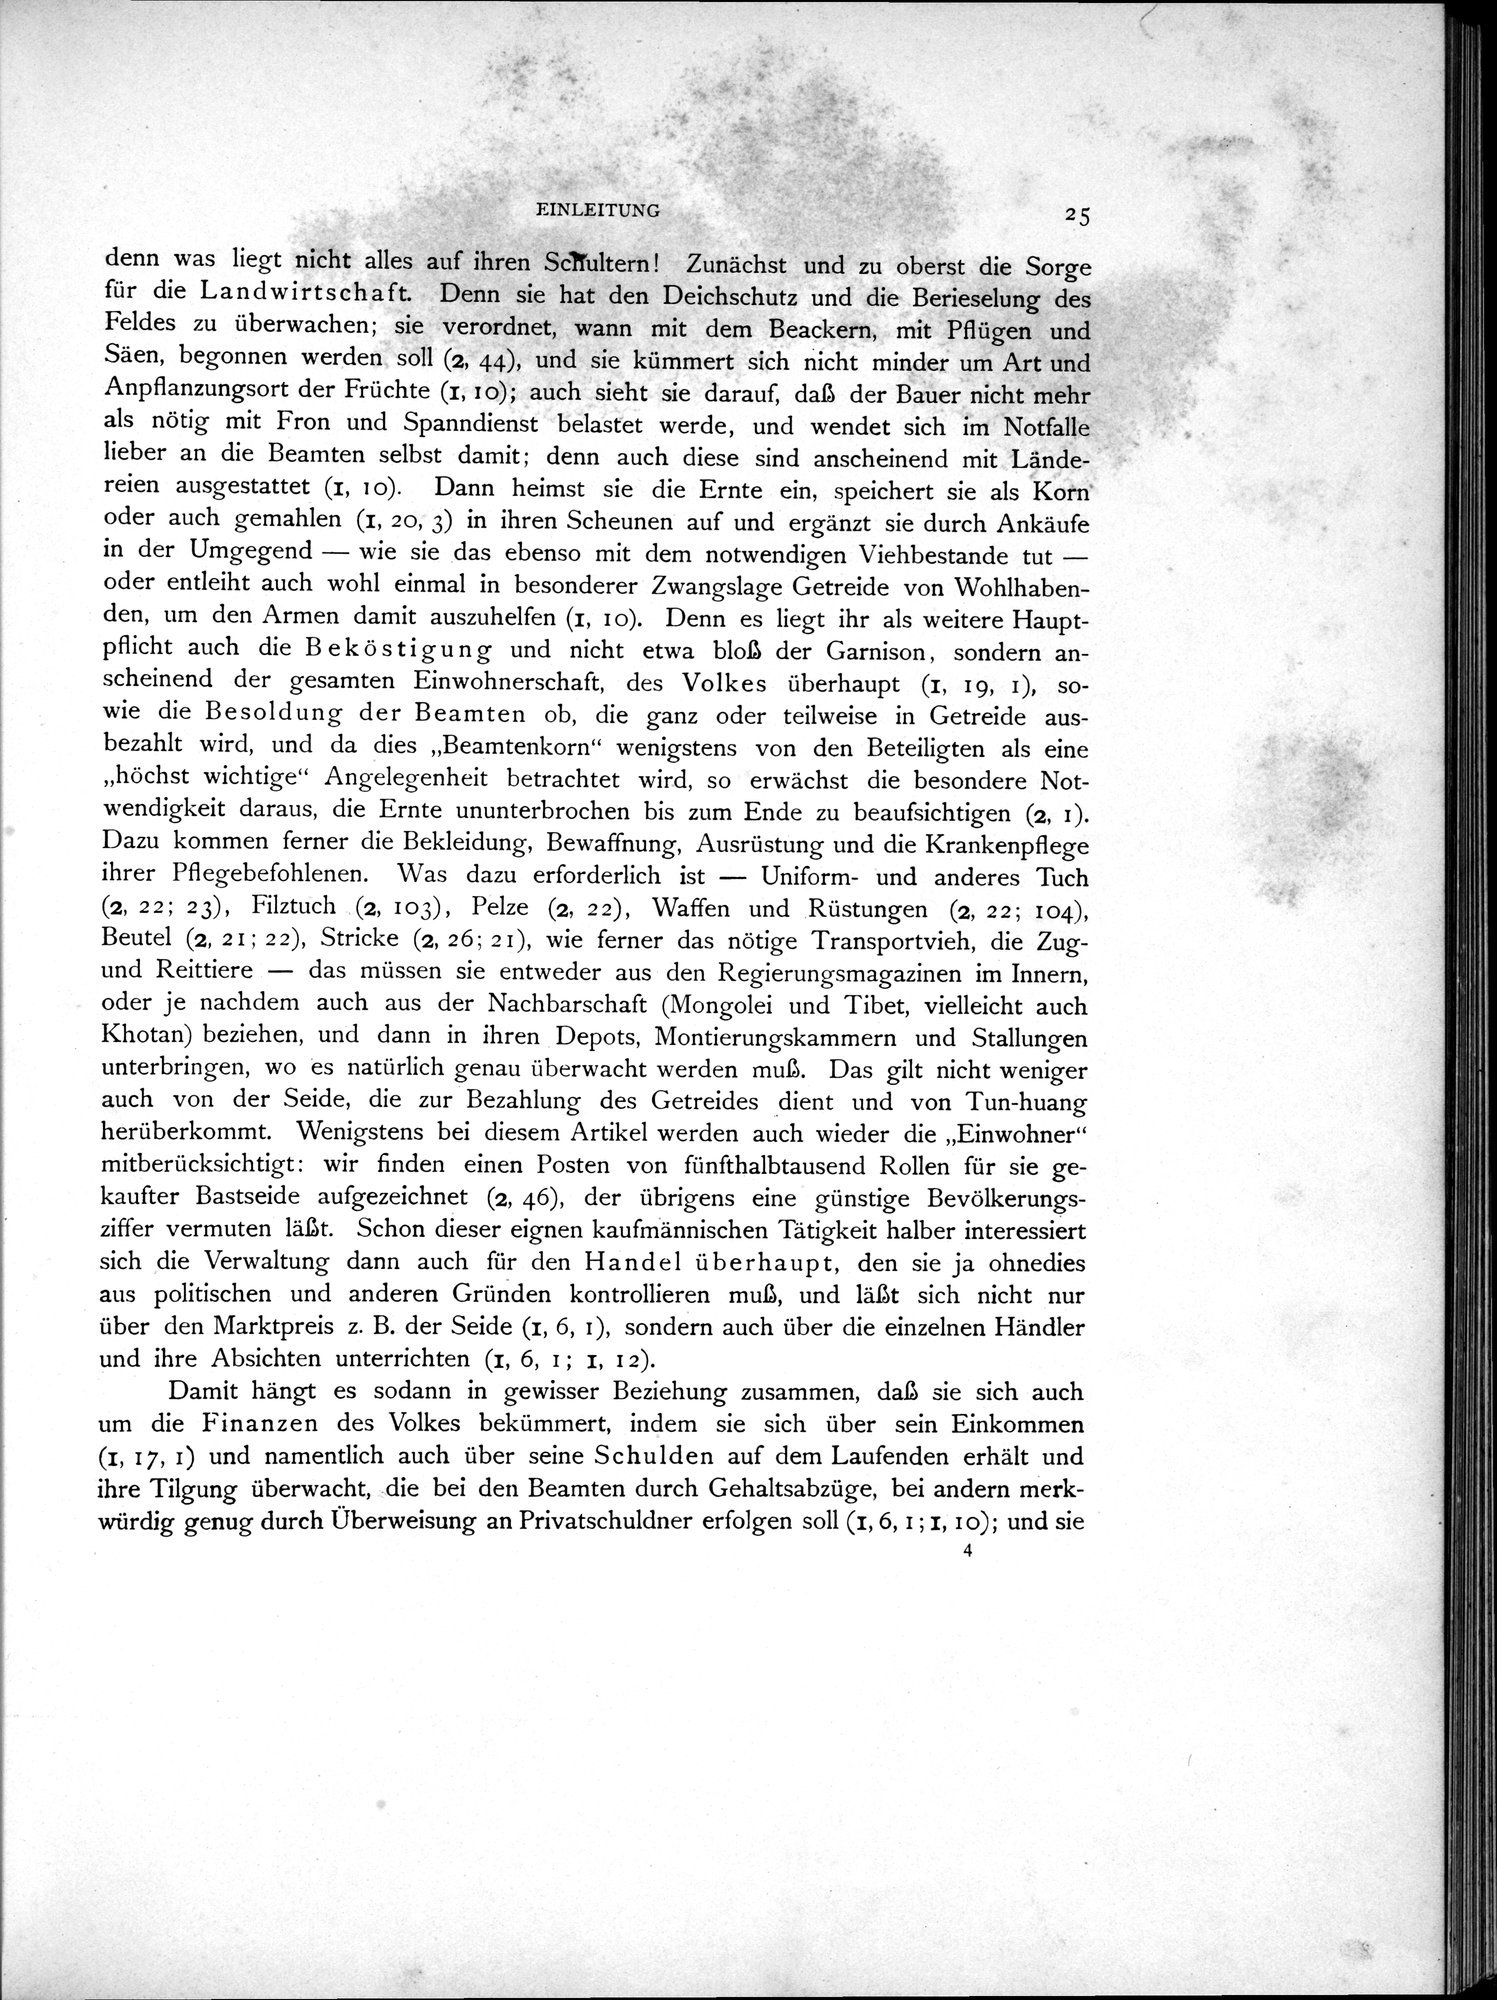 Die Chinesischen Handschriften- und sonstigen Kleinfunde Sven Hedins in Lou-lan : vol.1 / Page 49 (Grayscale High Resolution Image)